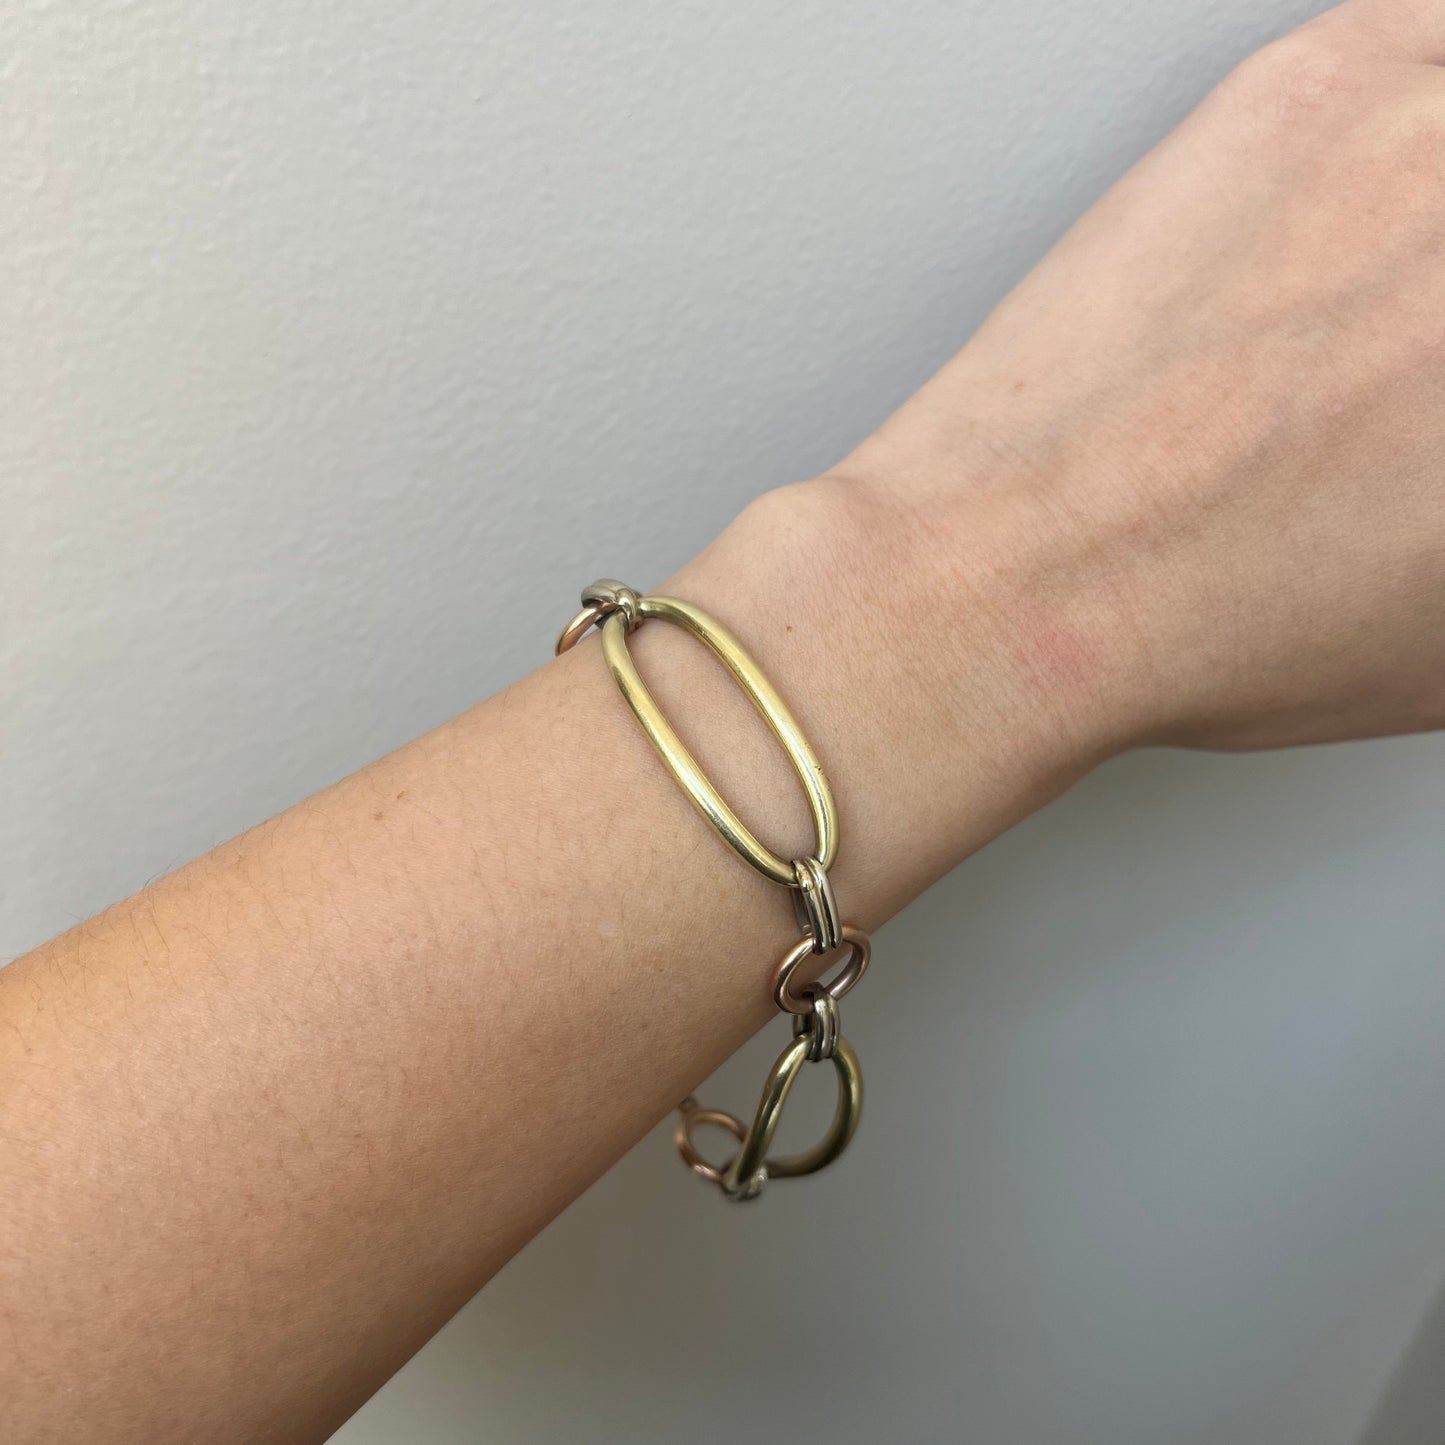 1950s 14KT Yellow Gold Open Link Bracelet worn on wrist